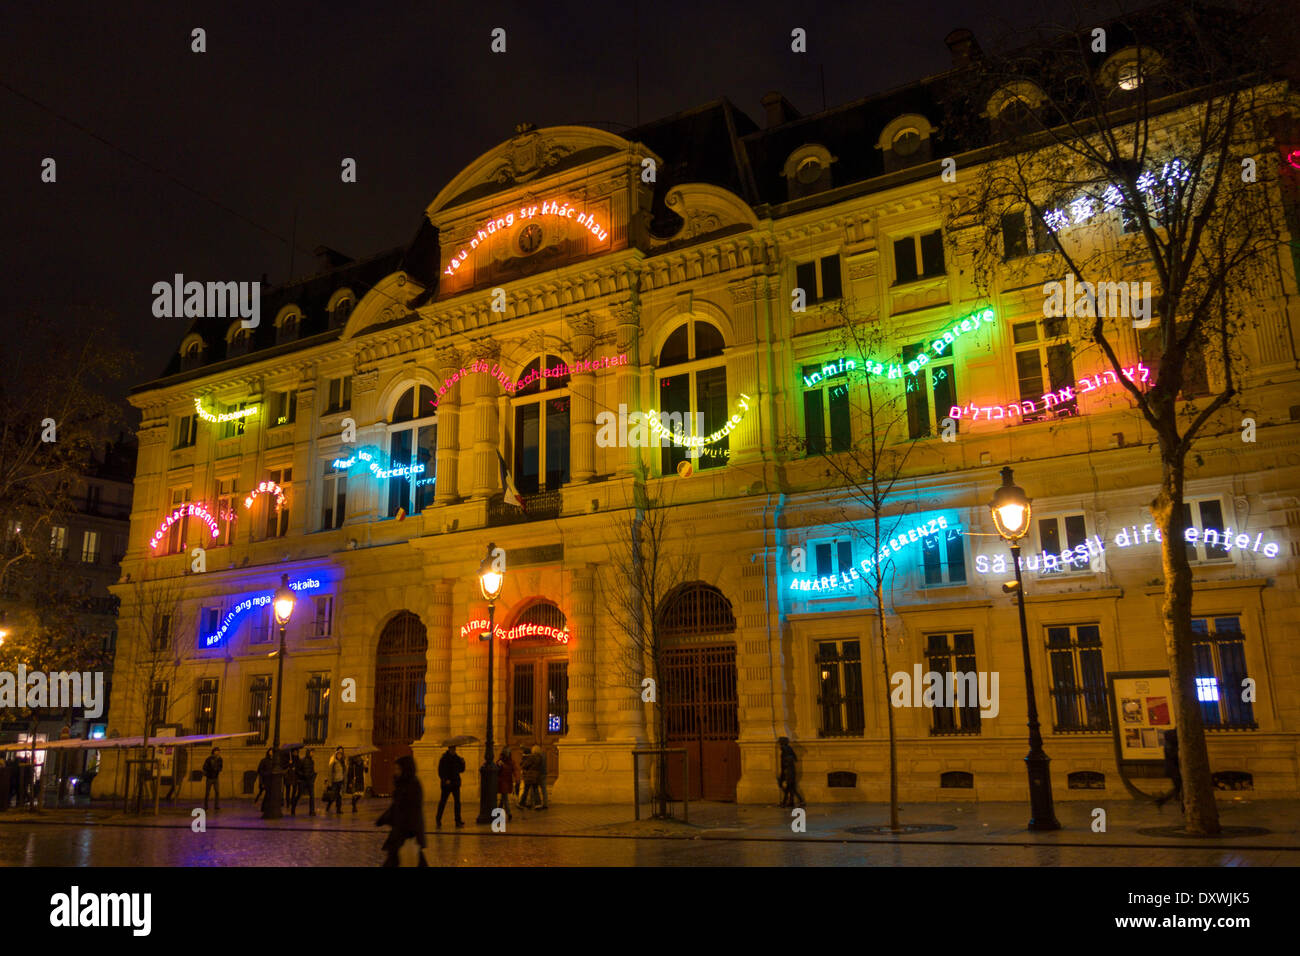 La Mairie de la IV arrondissement decorado con luces de neón en muchos idiomas celebrando las diferencias, París, Francia Foto de stock